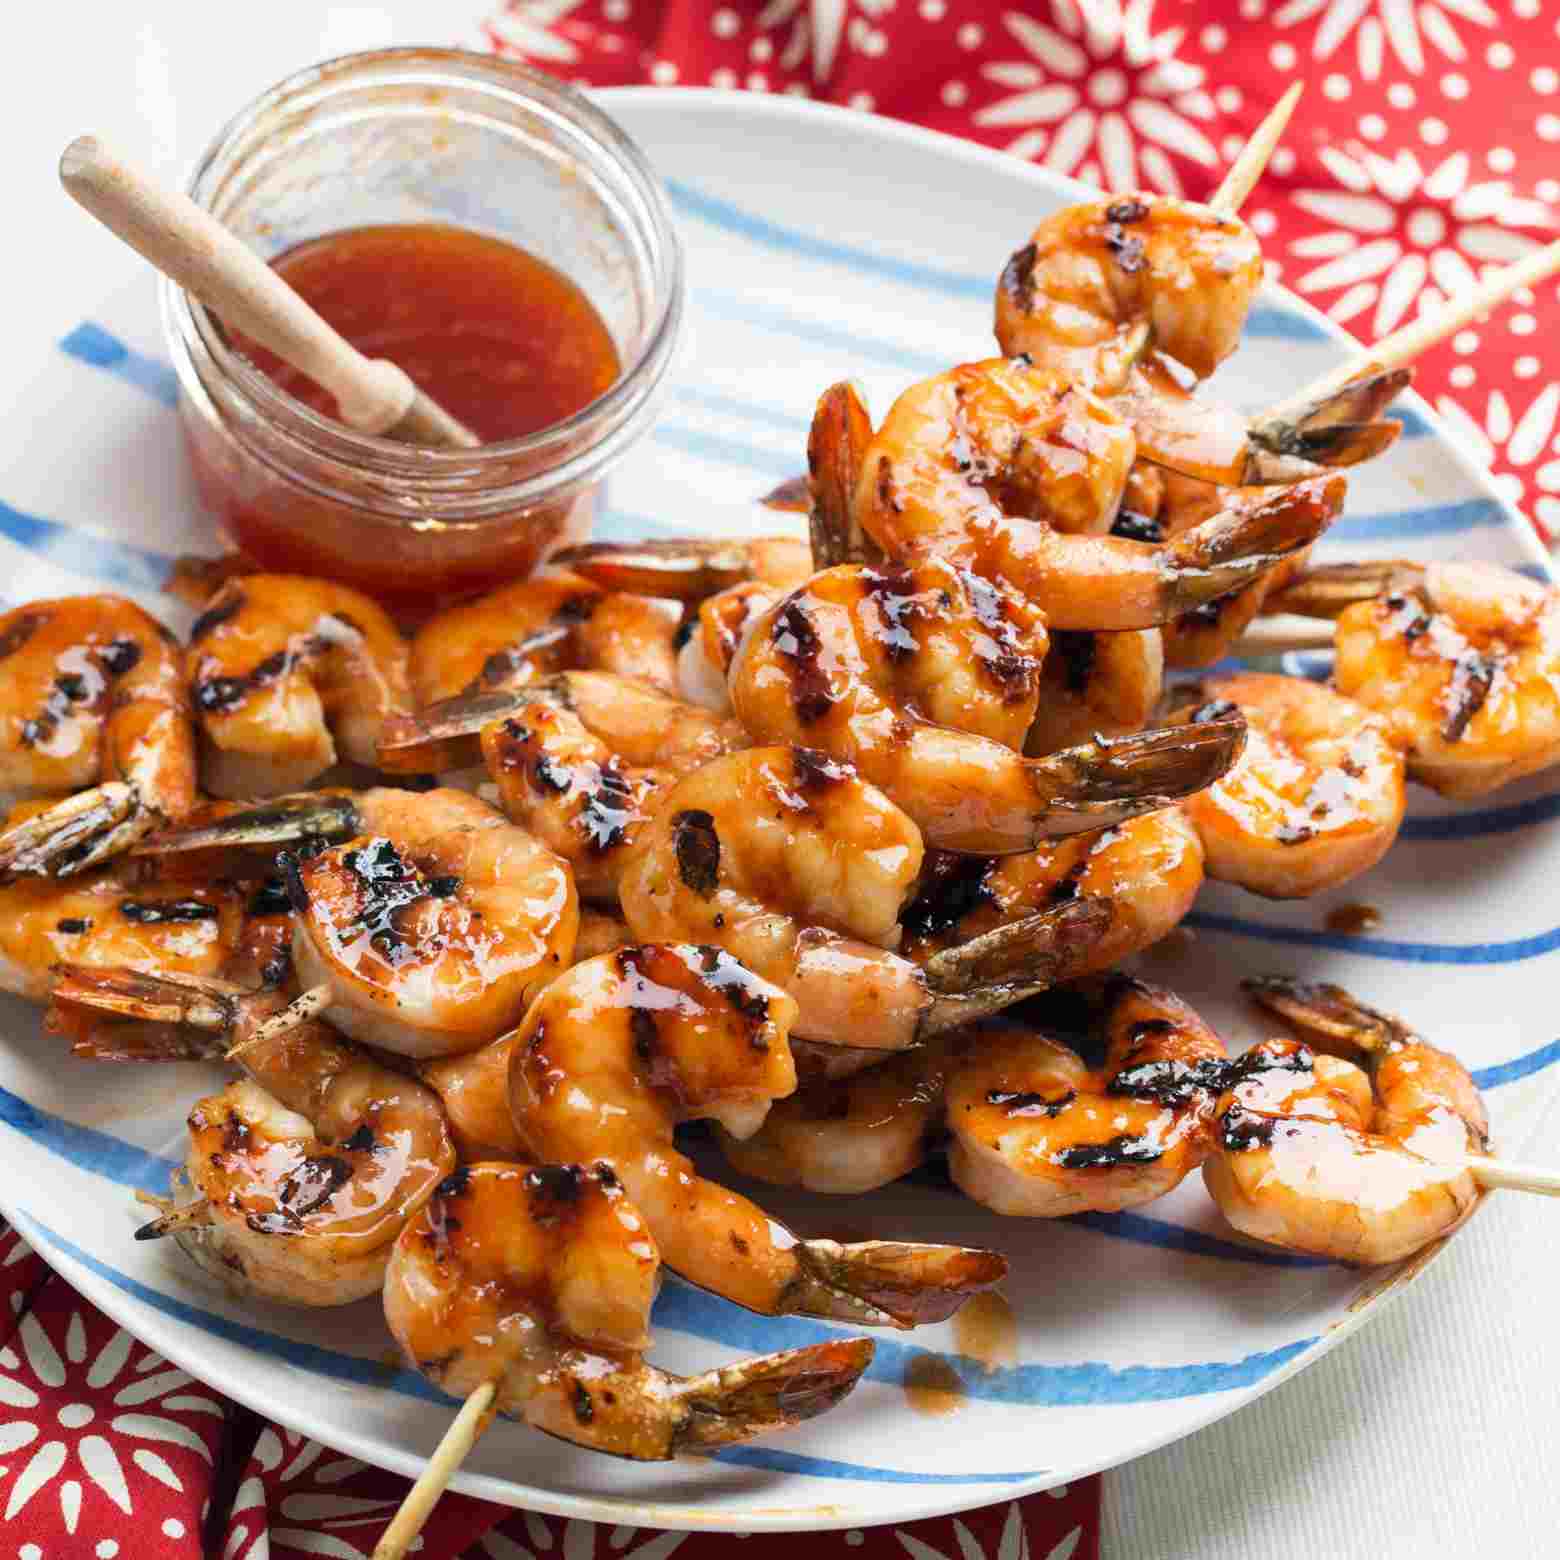 Die besten Shrimps Rezepte - 11 himmlisch leckere und einfache Ideen!